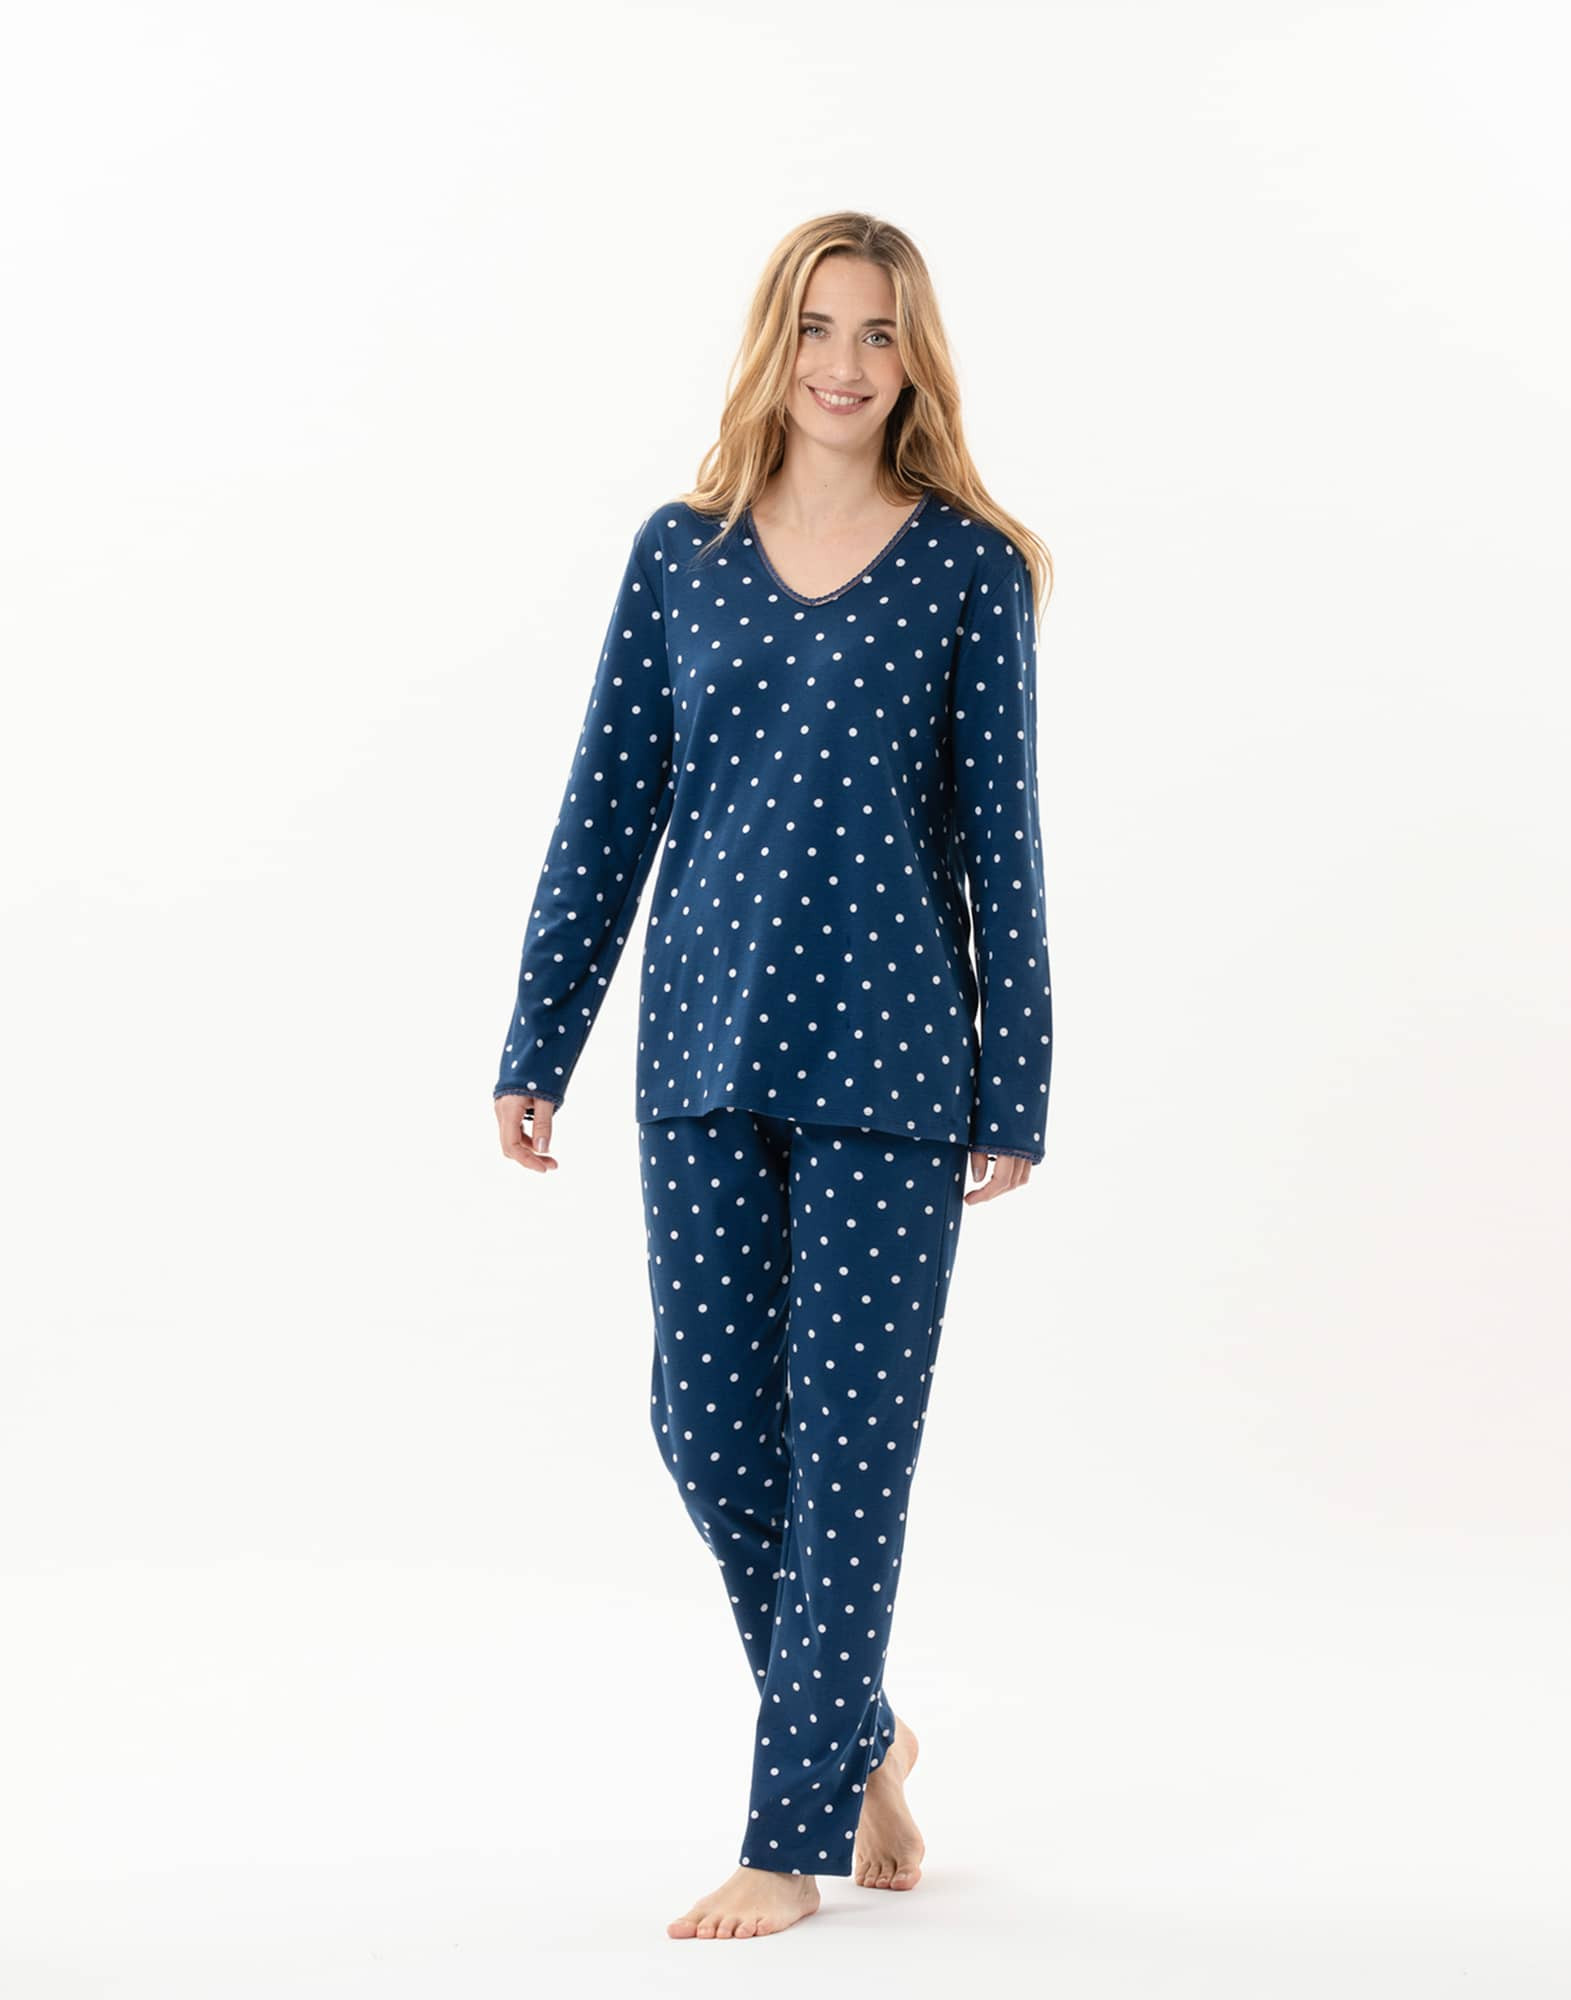 Pyjama en coton CHAMADE 802 Prusse | Lingerie le Chat